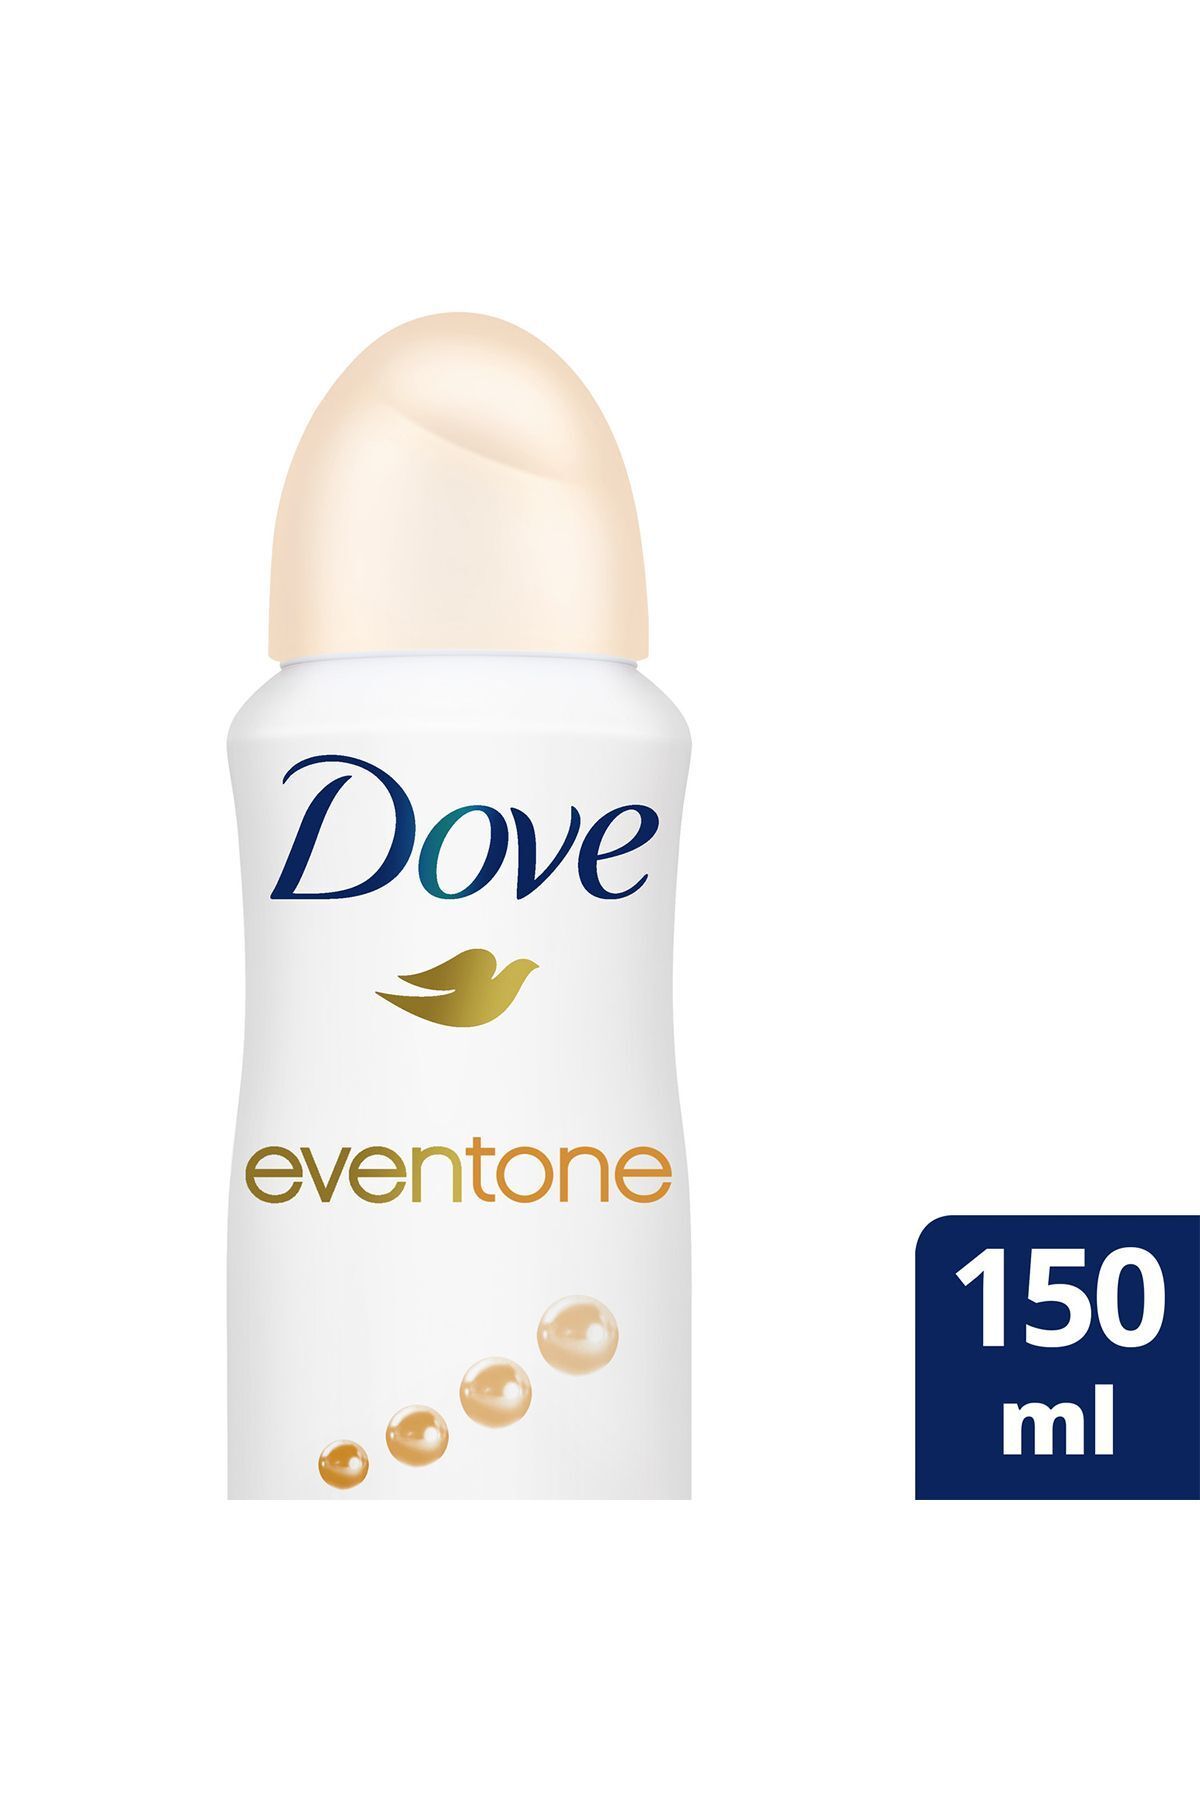 Dove Kadın Sprey Eventone Deodorant 150ml x1 Adet